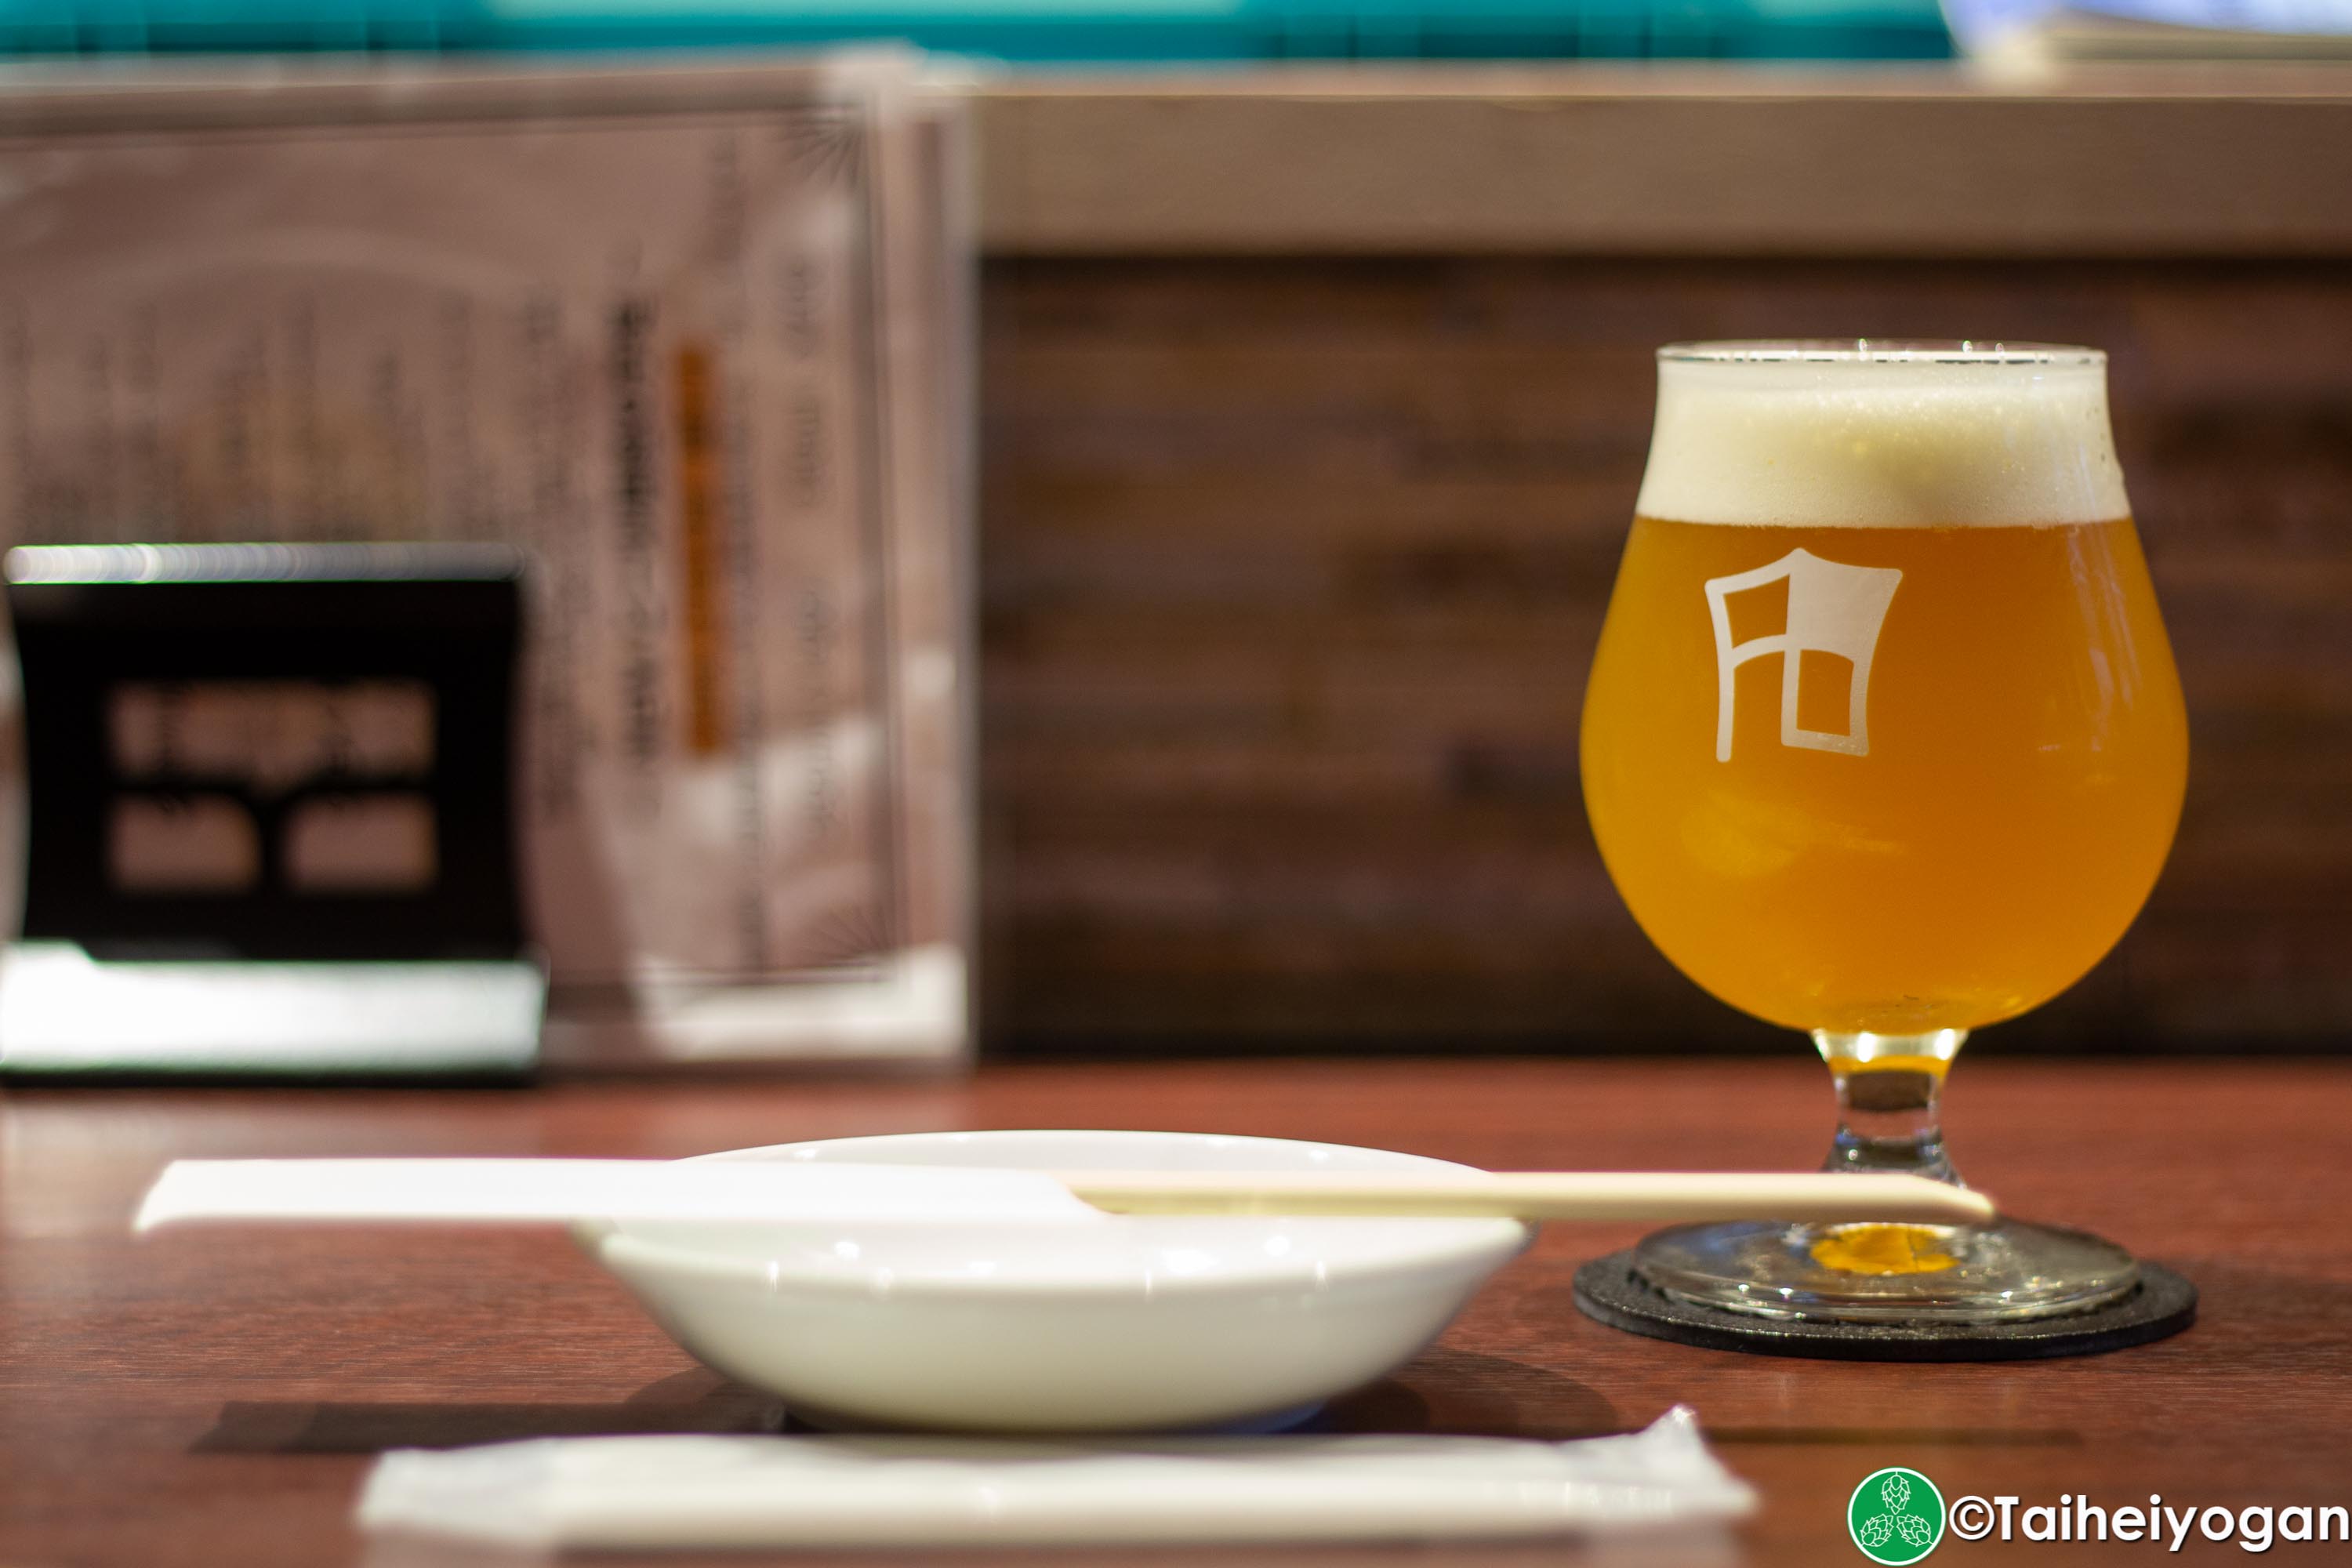 Funabashi Beer - 船橋ビール醸造所 - Menu - Craft Beer